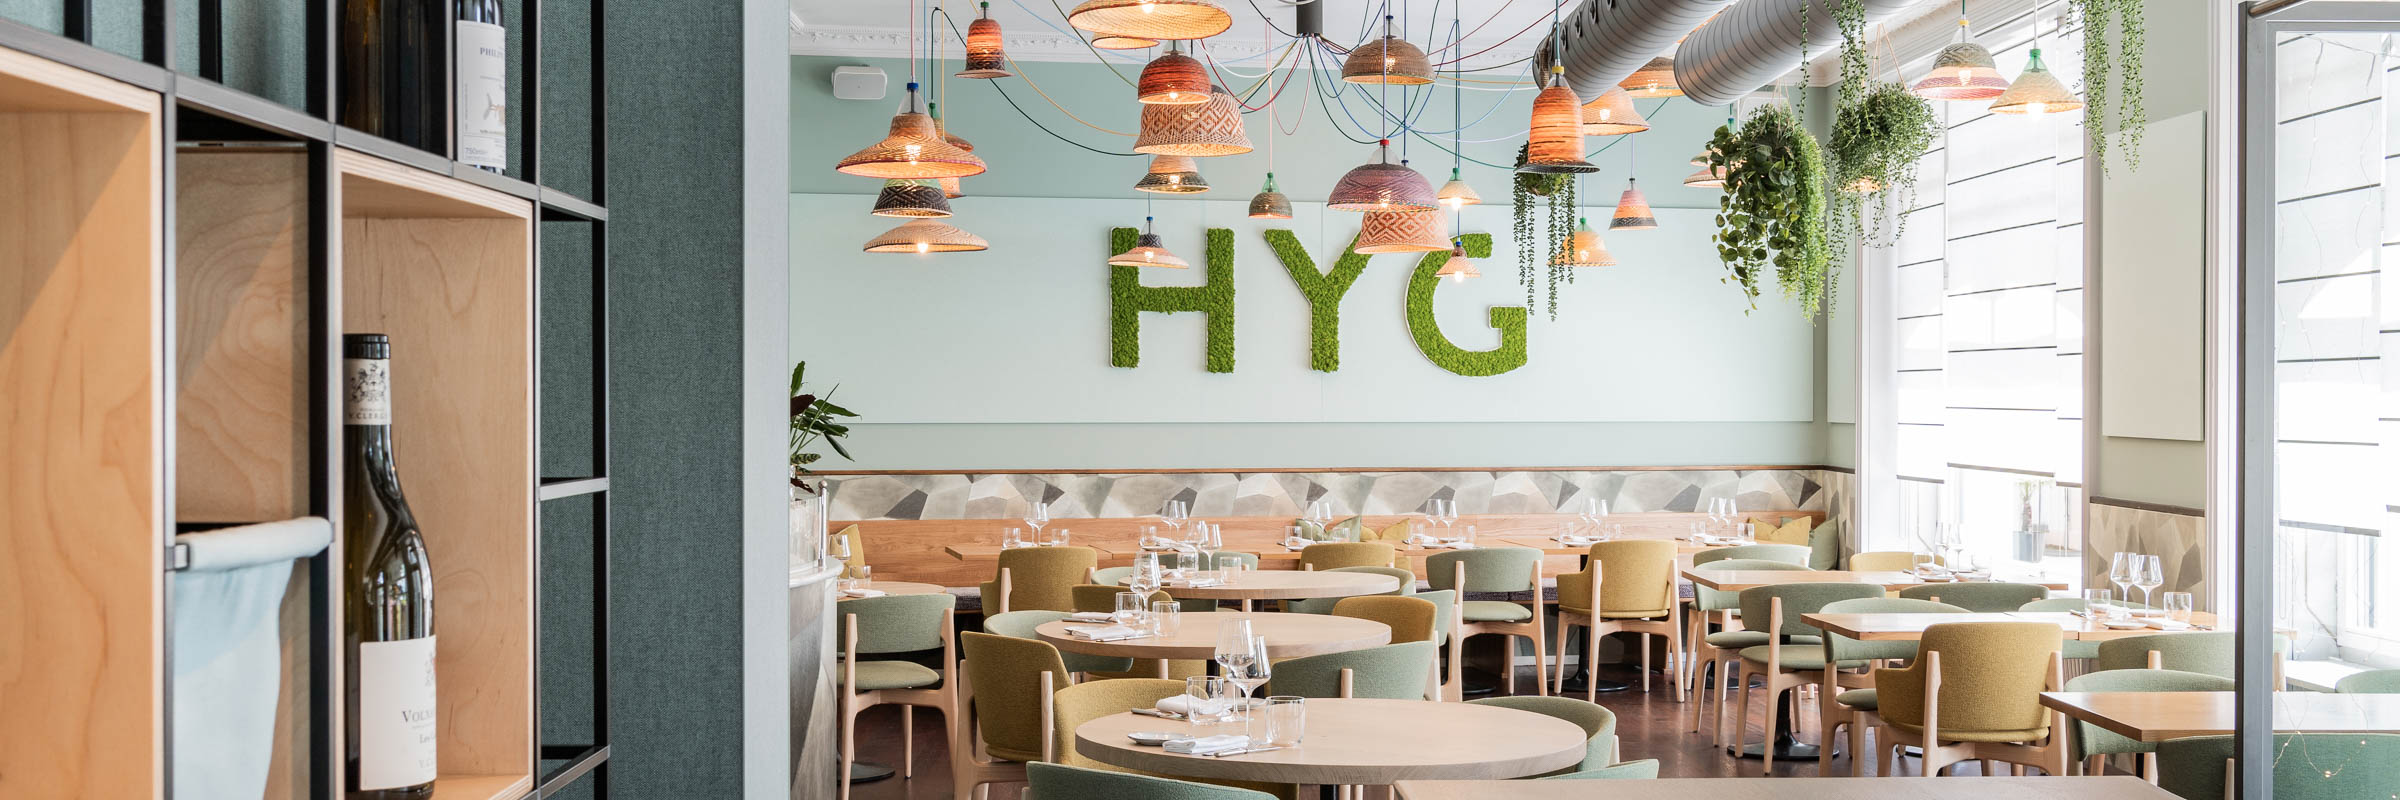 HYG Restaurant Bar Restaurant 1 - HYG Restaurant & Bar